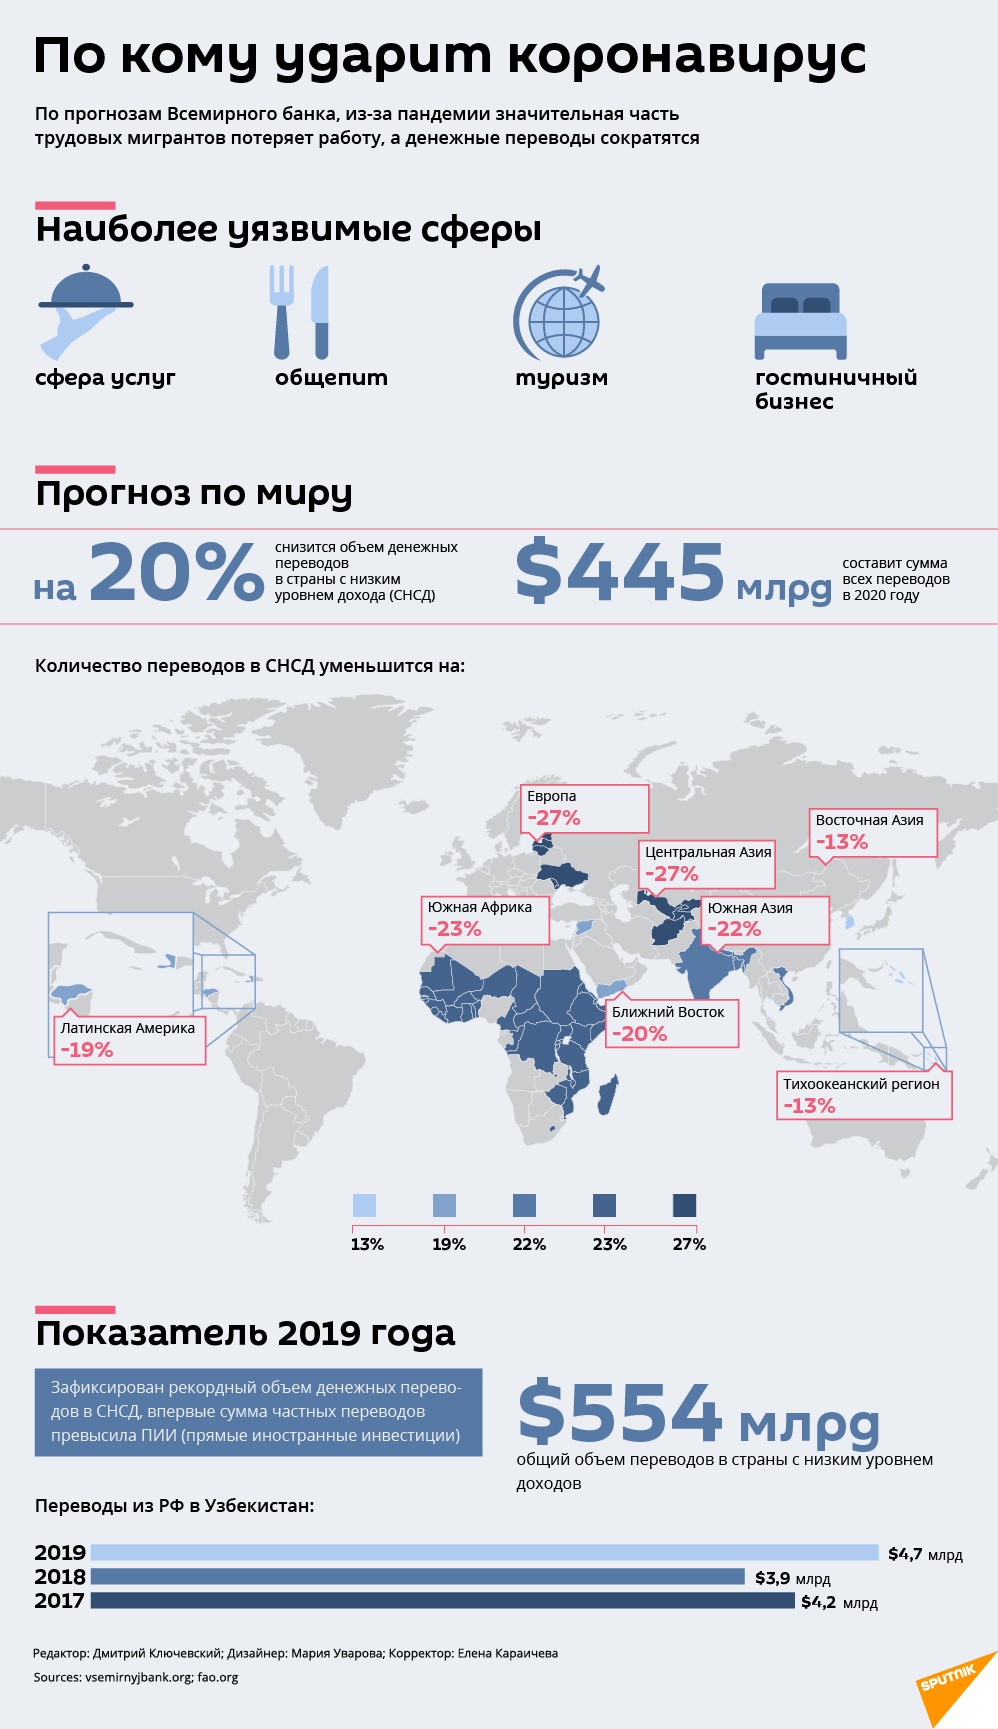 Прогнозы по объемам денежных переводов на фоне коронавируса - Sputnik Узбекистан